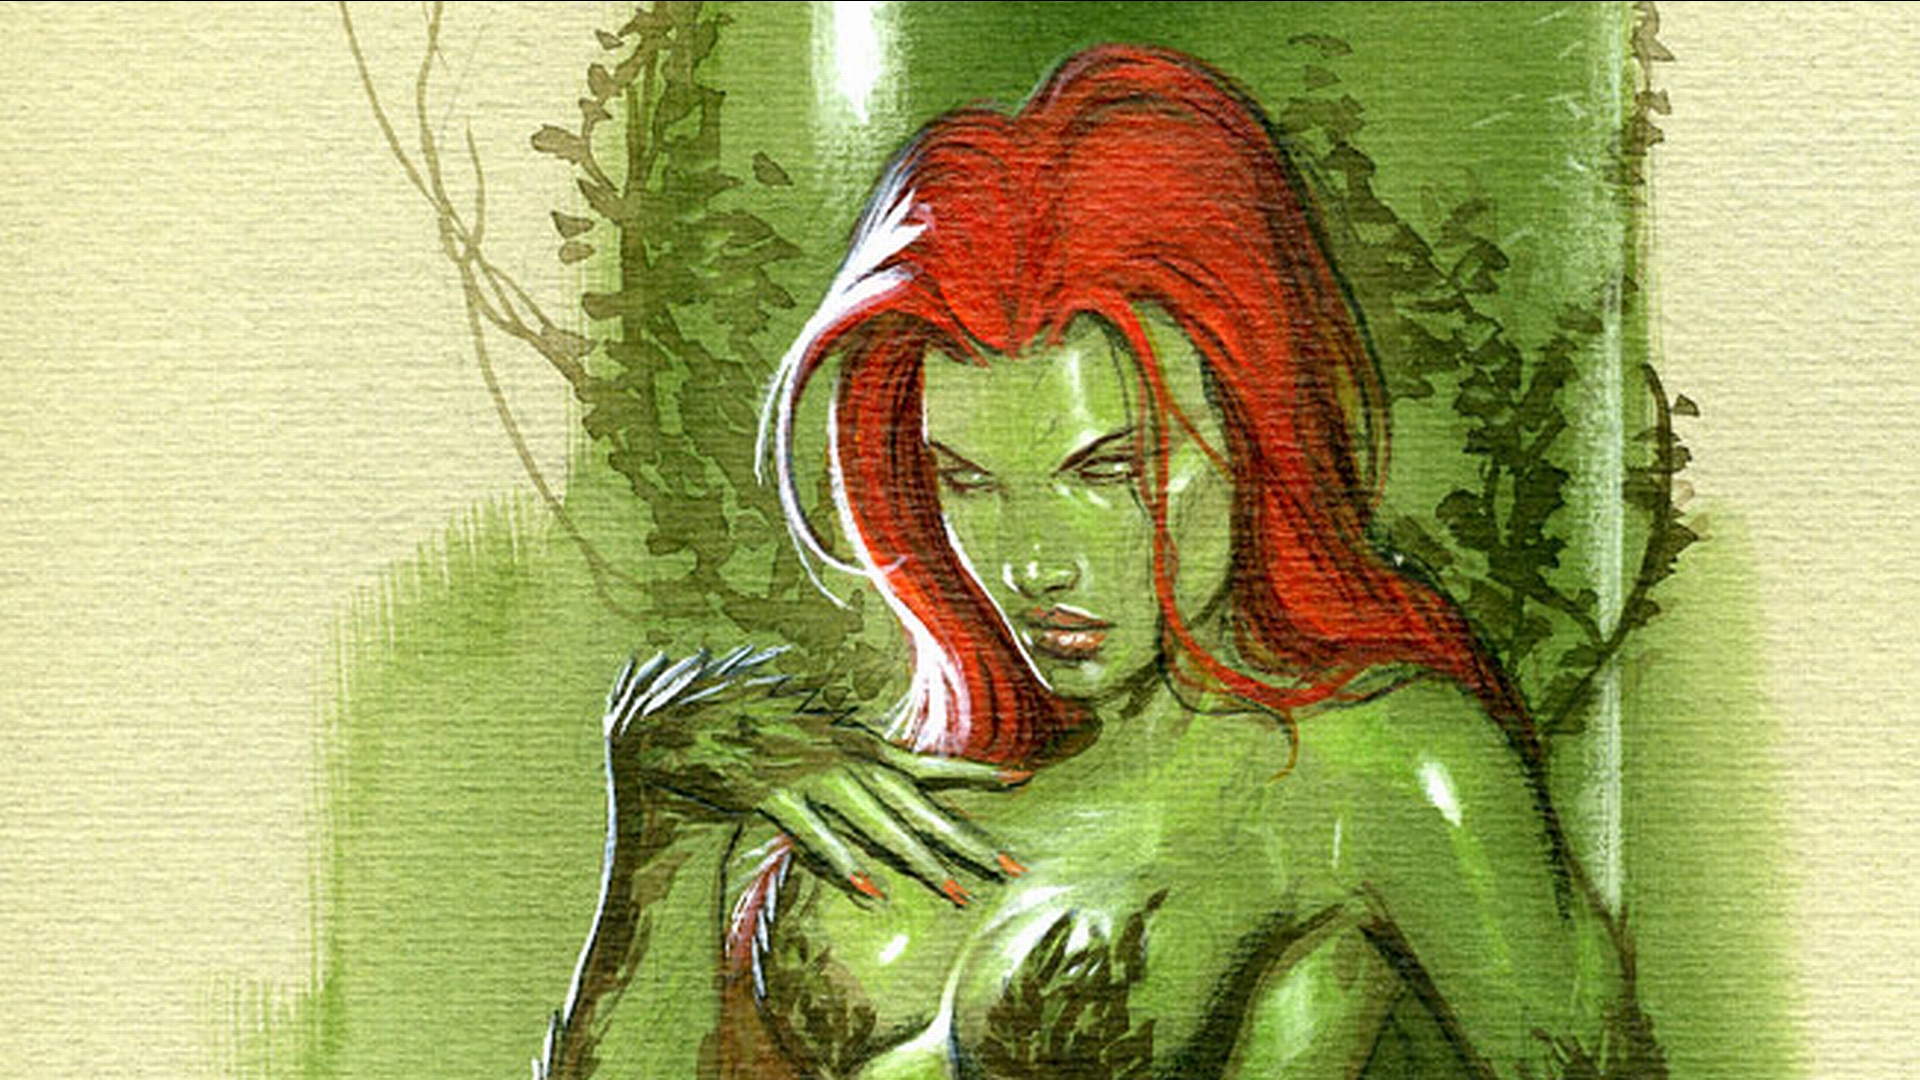 Poison Ivy Art